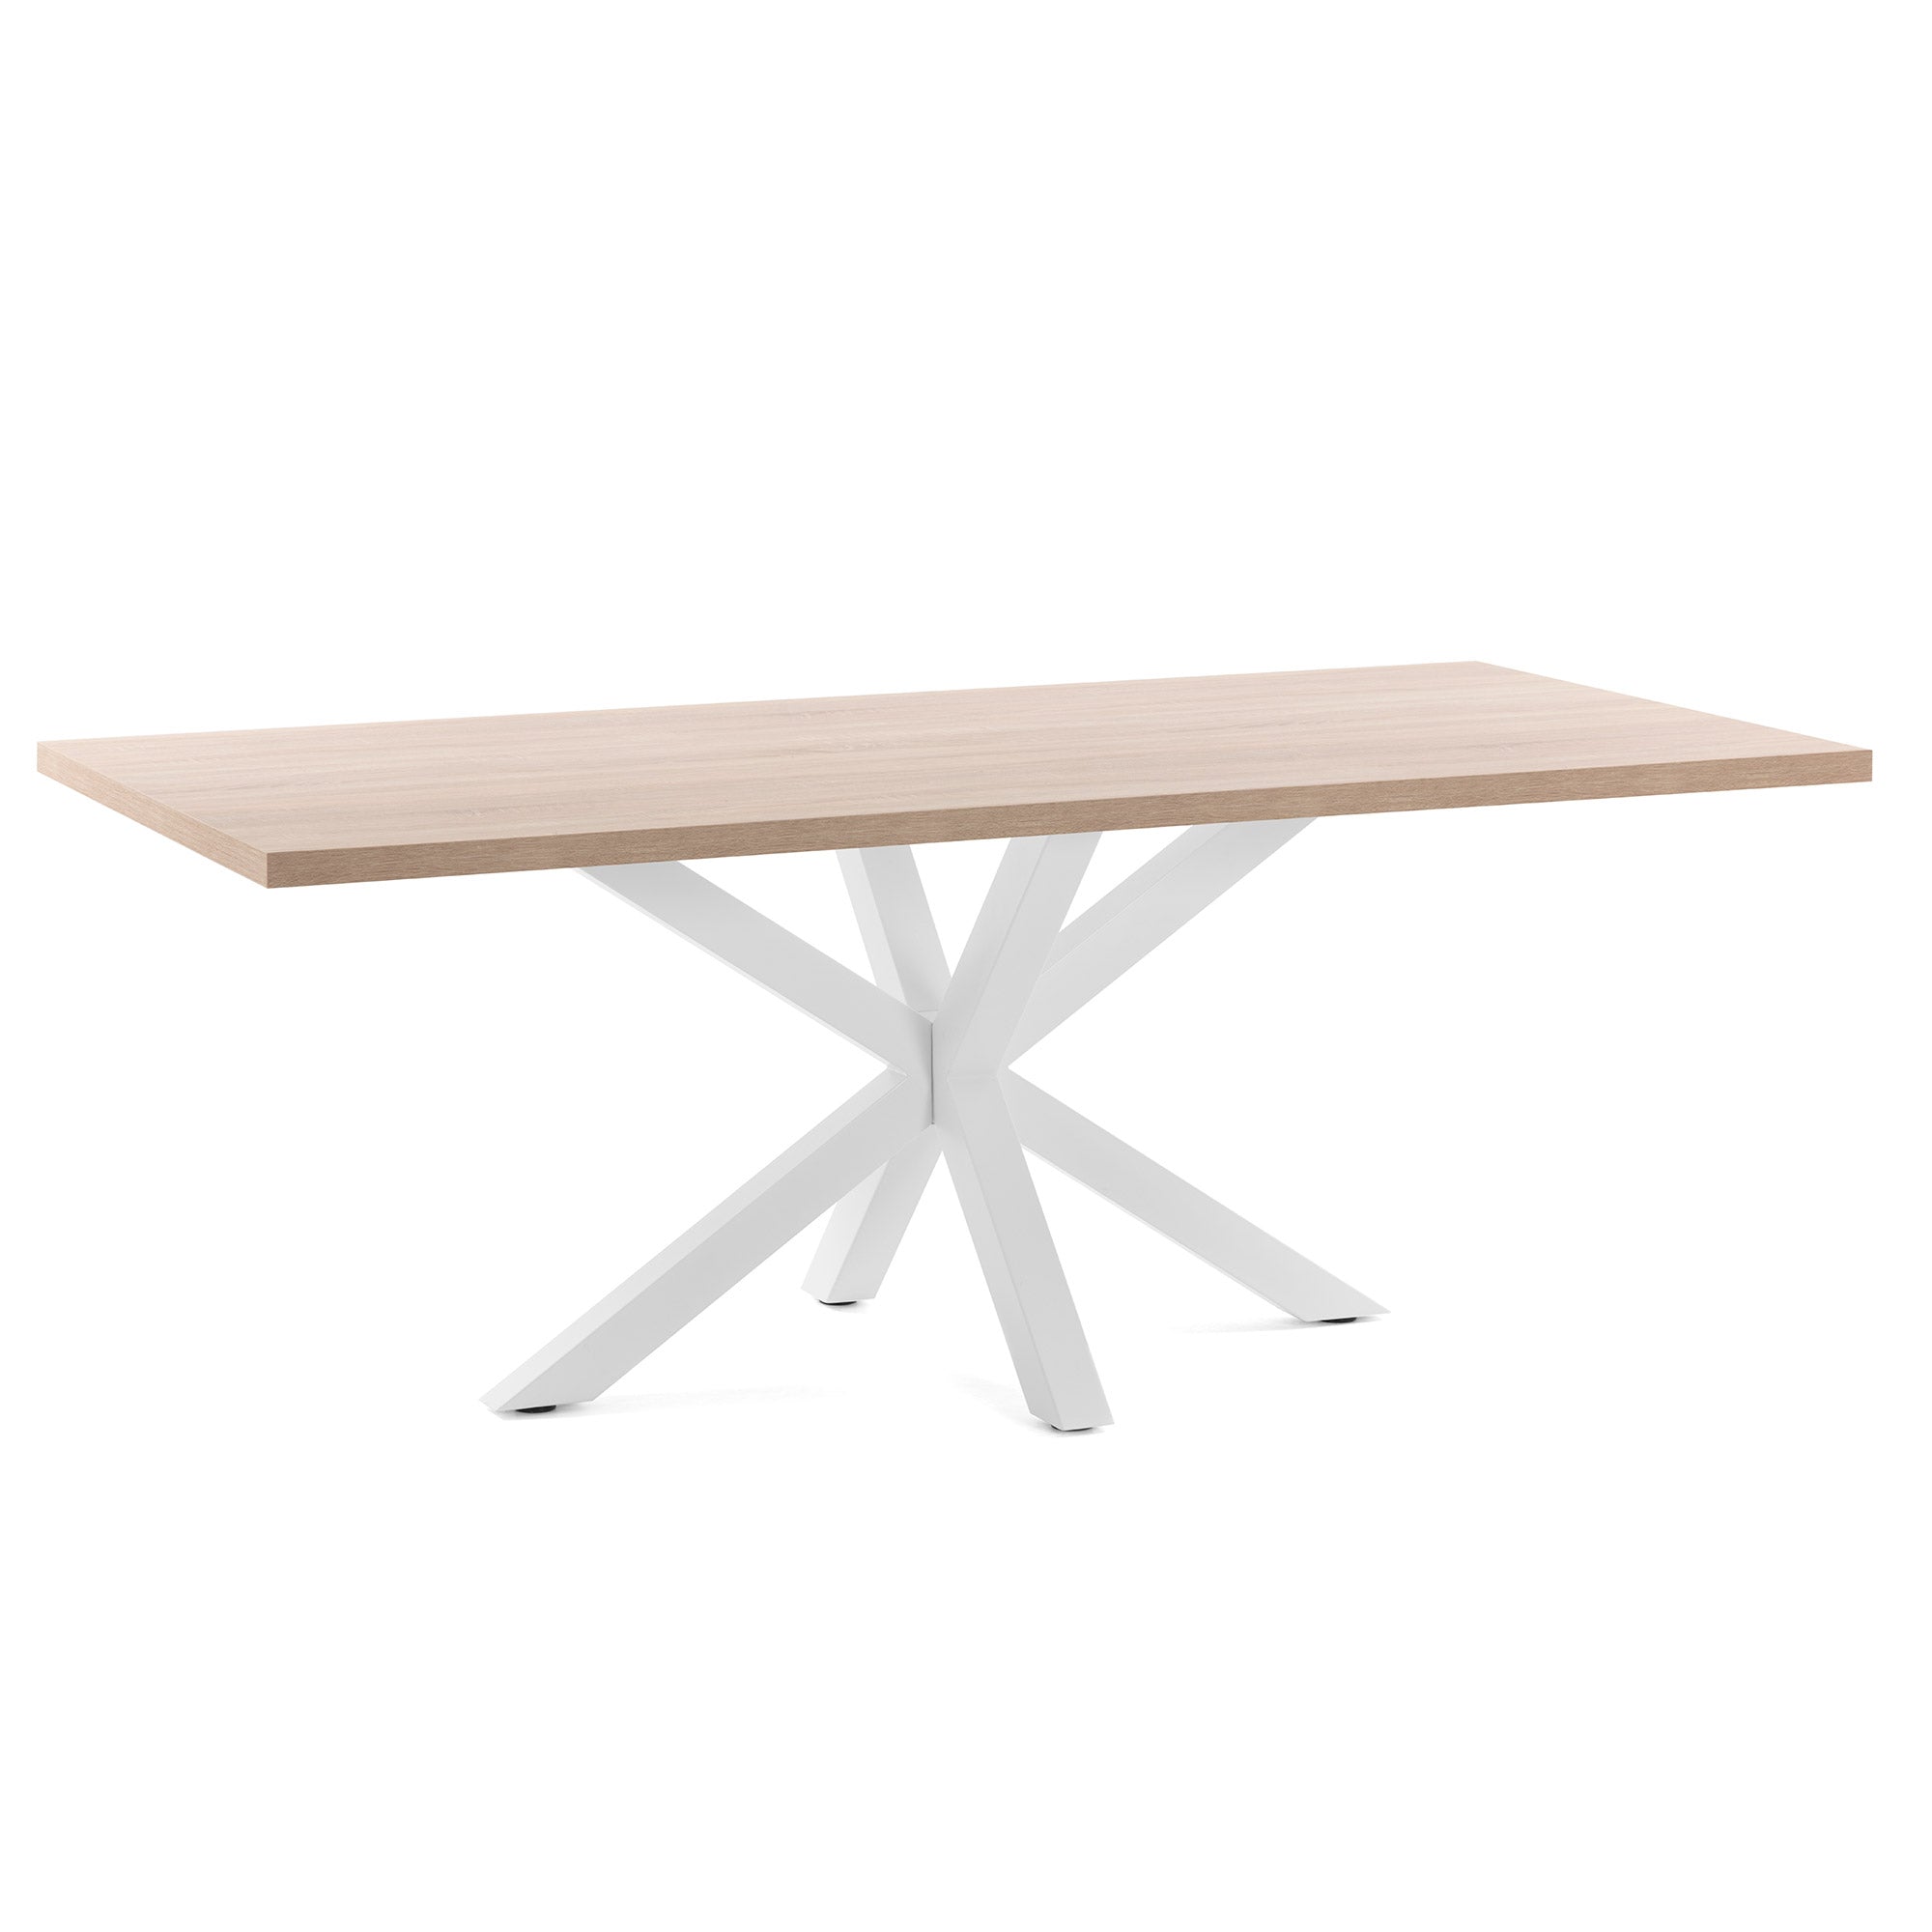 Argo asztal természetes melaminból, fehér acéllábakkal, 200 x 100 cm